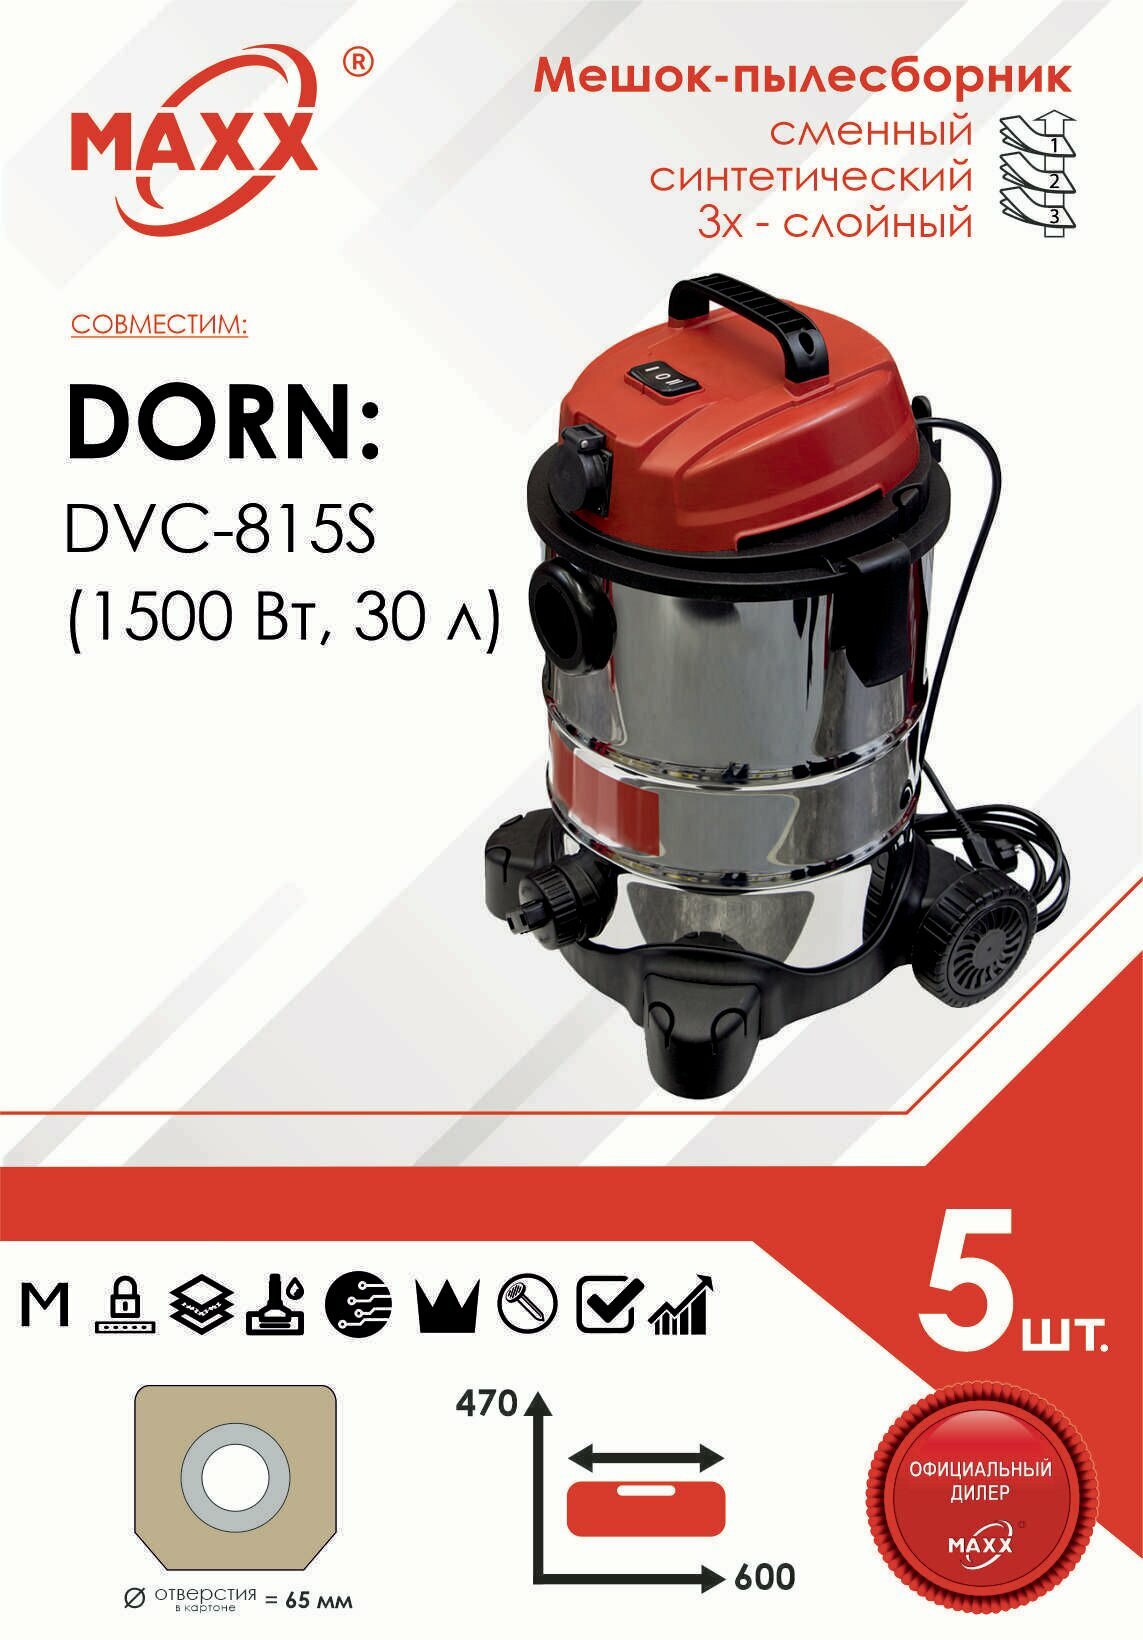 Мешок - пылесборник 5 шт. для пылесоса DORN DVC-815S, 1500 Вт, 30 л, арт. 706002807